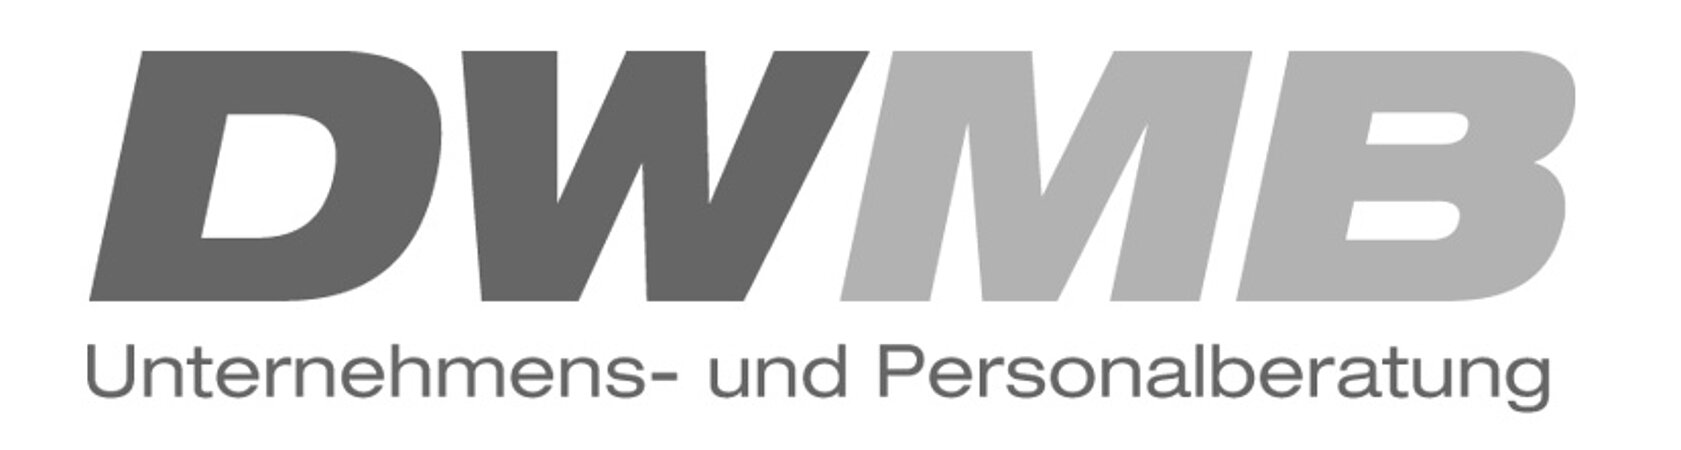 DWMB sucht Technischer Betriebswirt / Techniker SHK (m/w/d) Standort Leonberg/BaWü 